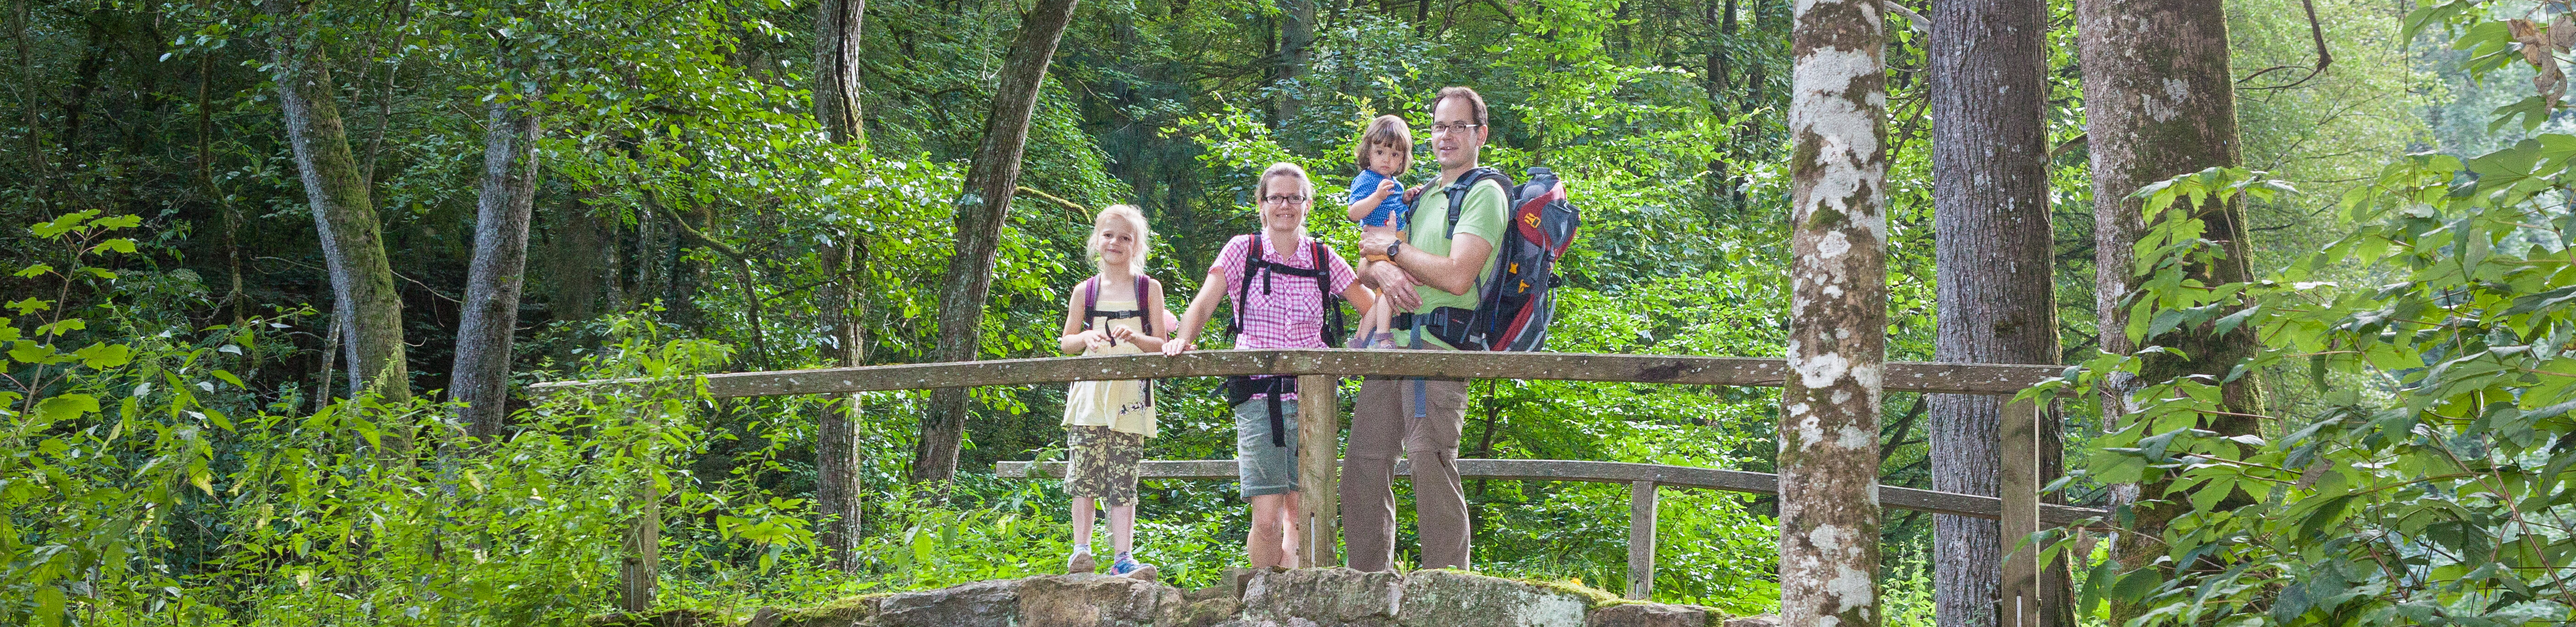 Familie mit Rucksäcken auf Brücke im Wald